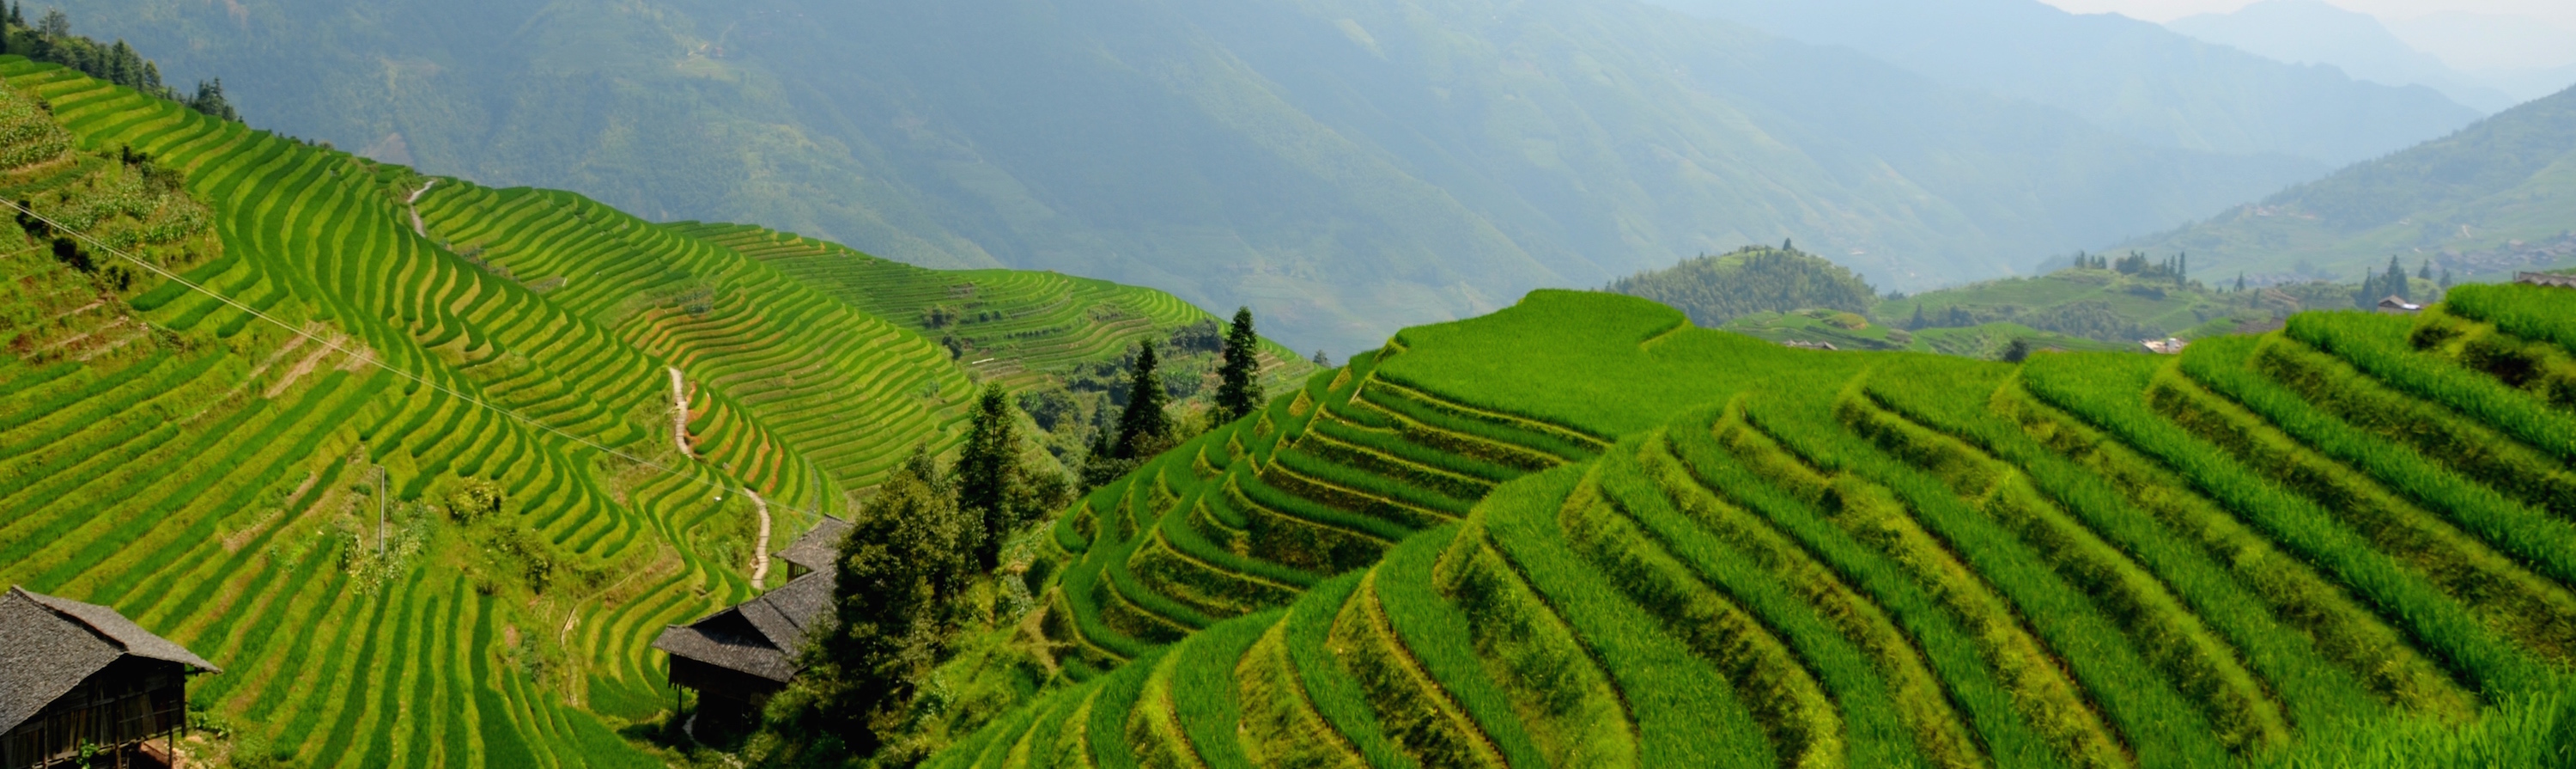 Terrazas arroz Longji, Guilin, China